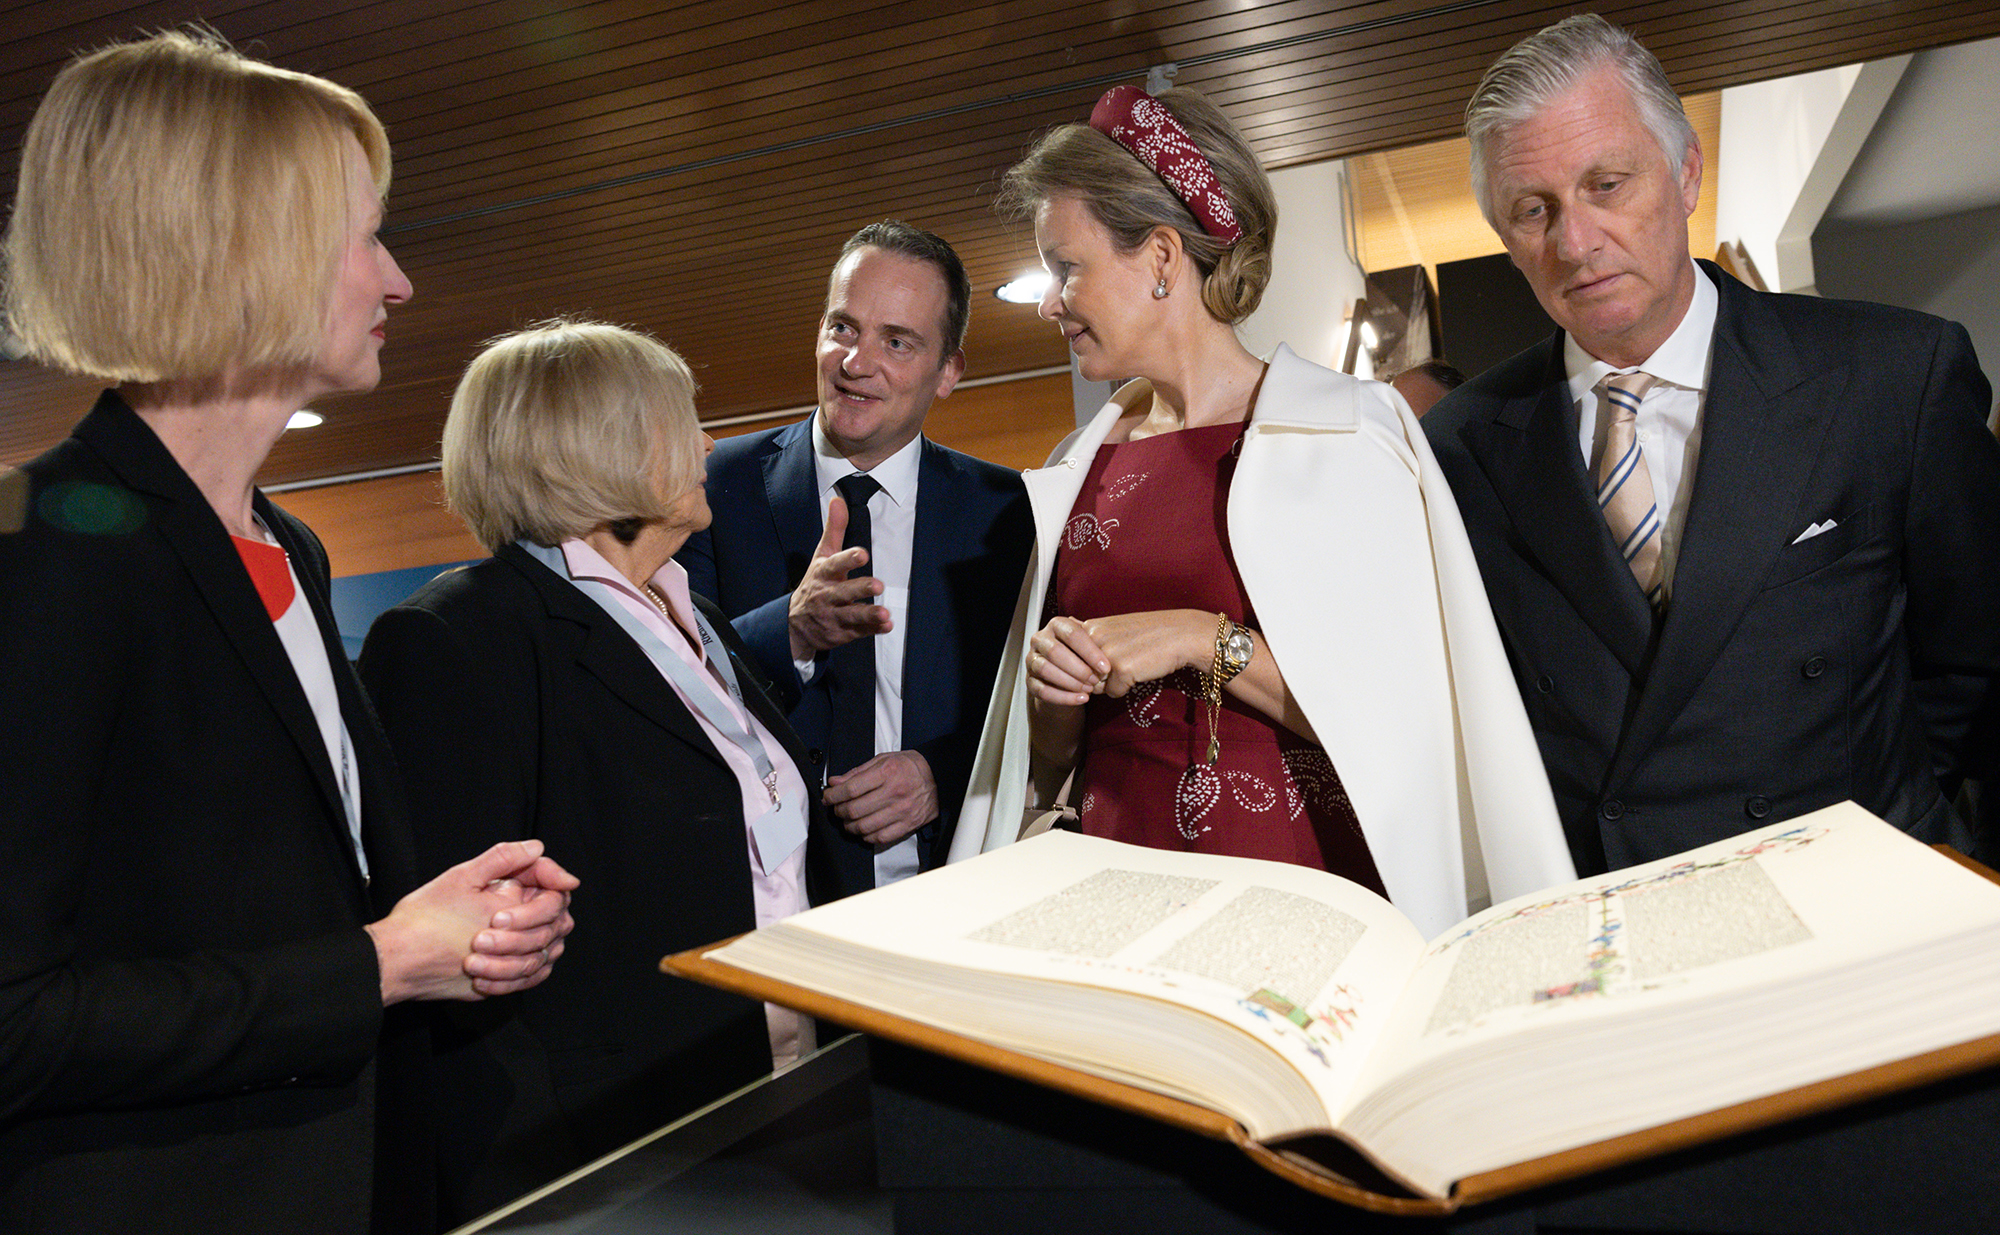 DG-Ministerpräsident Oliver Pasch mit dem Königspaar zu Besuch im Gutenberg-Museum in Mainz (Bild: Benoit Doppagne/Belga)